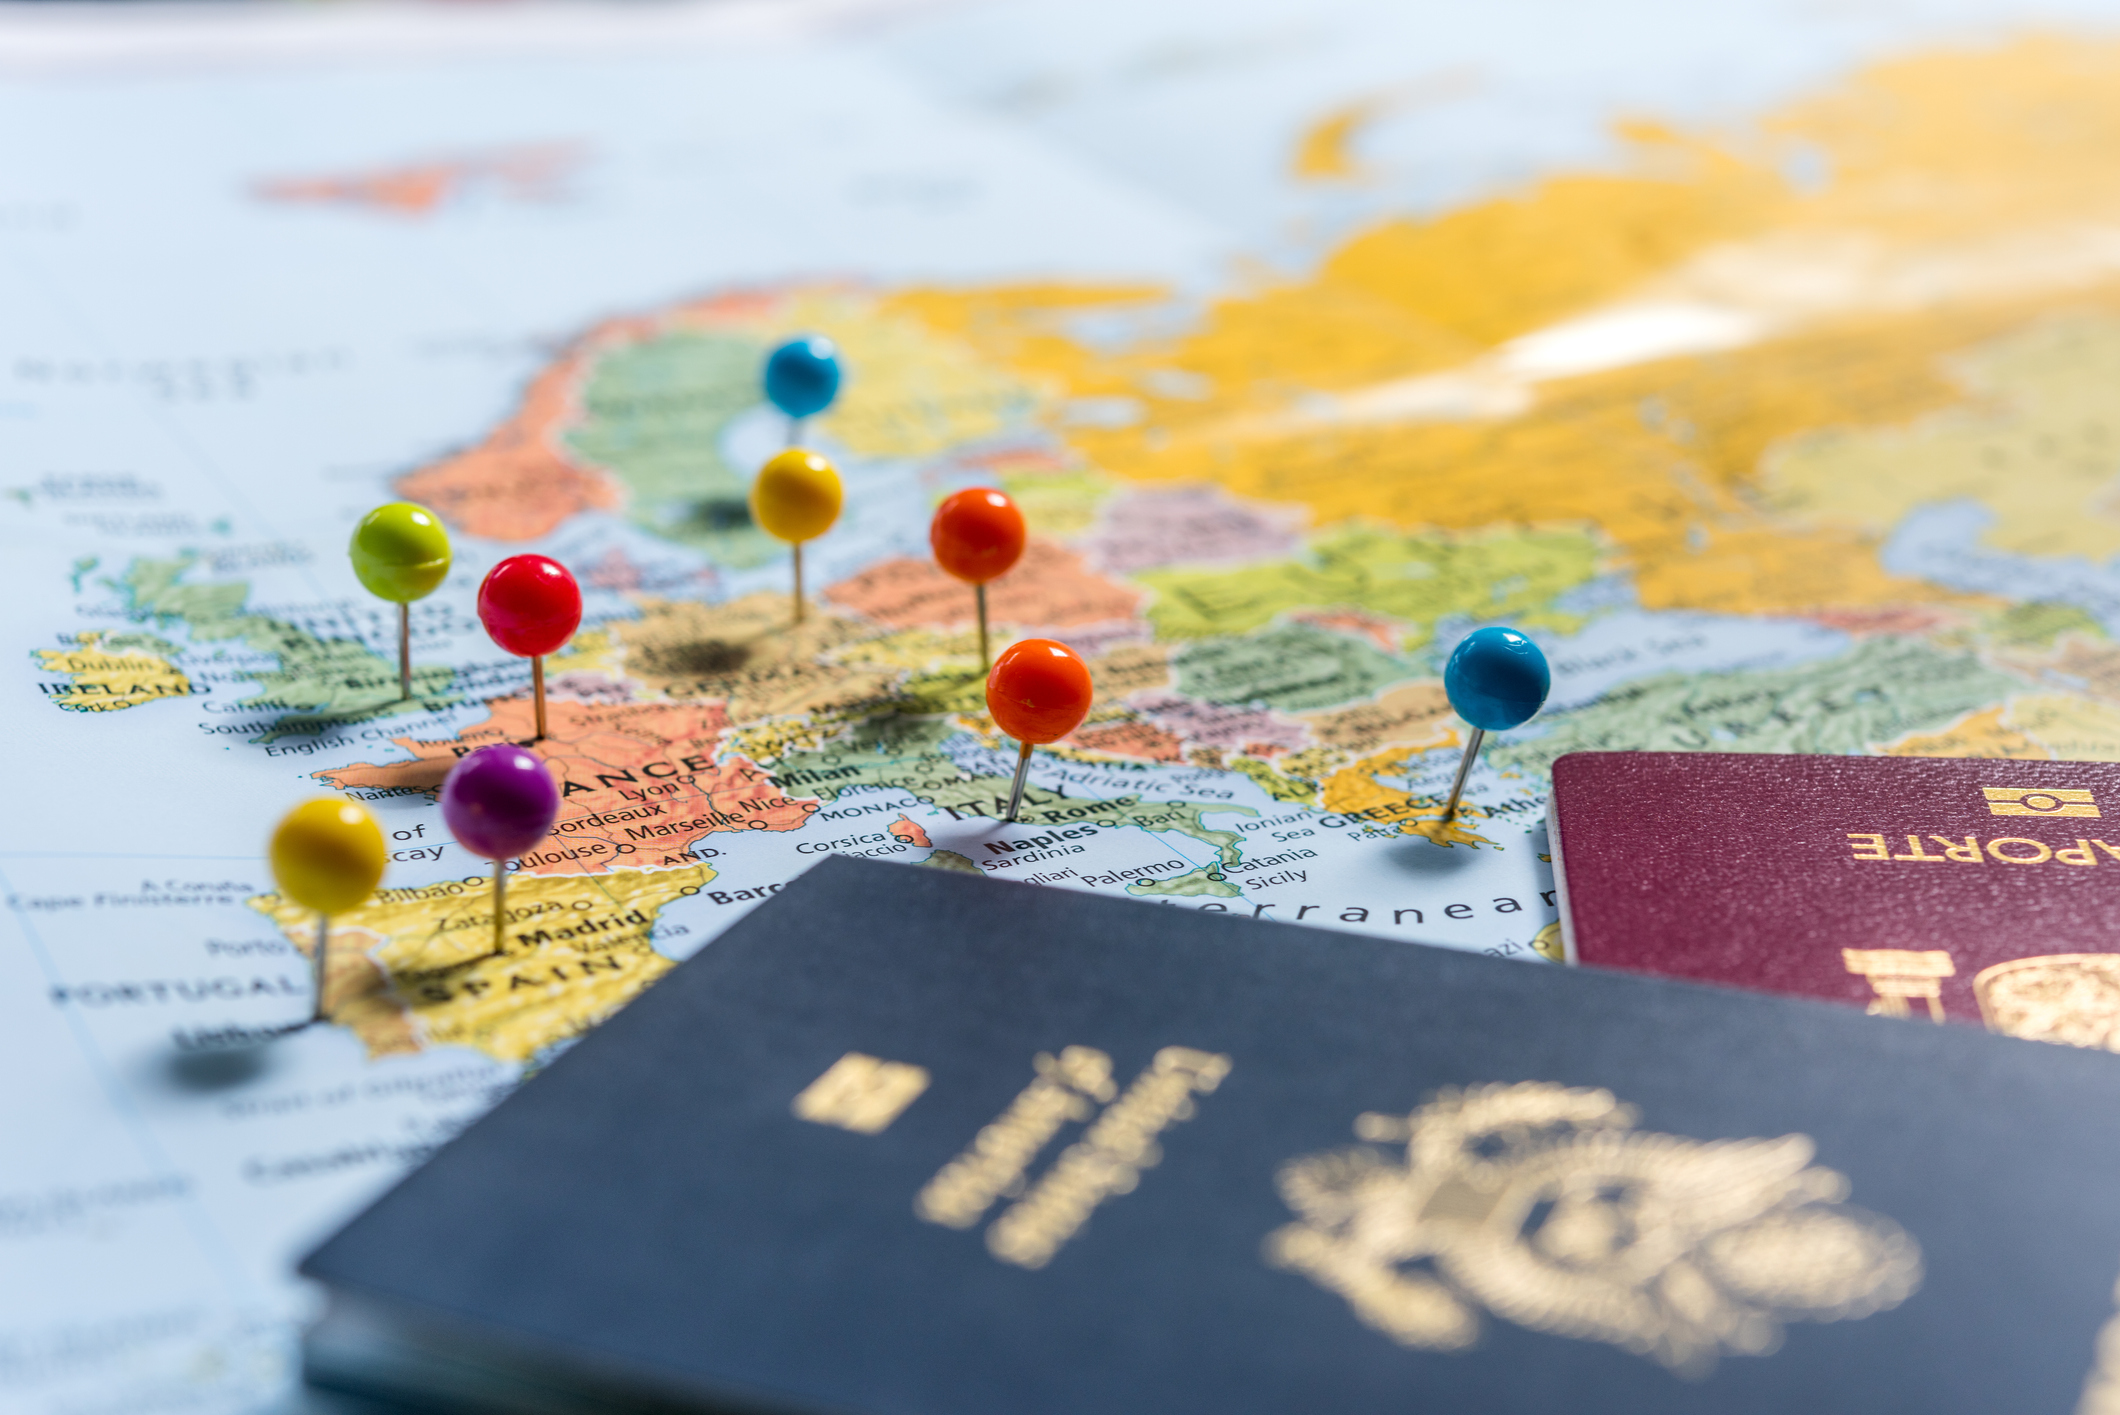 Οι Αυστραλοί ταξιδιώτες θα χρειαστούν απαλλαγή από την υποχρέωση θεώρησης για να ταξιδέψουν στην Ευρώπη το 2022 – Travel Weekly